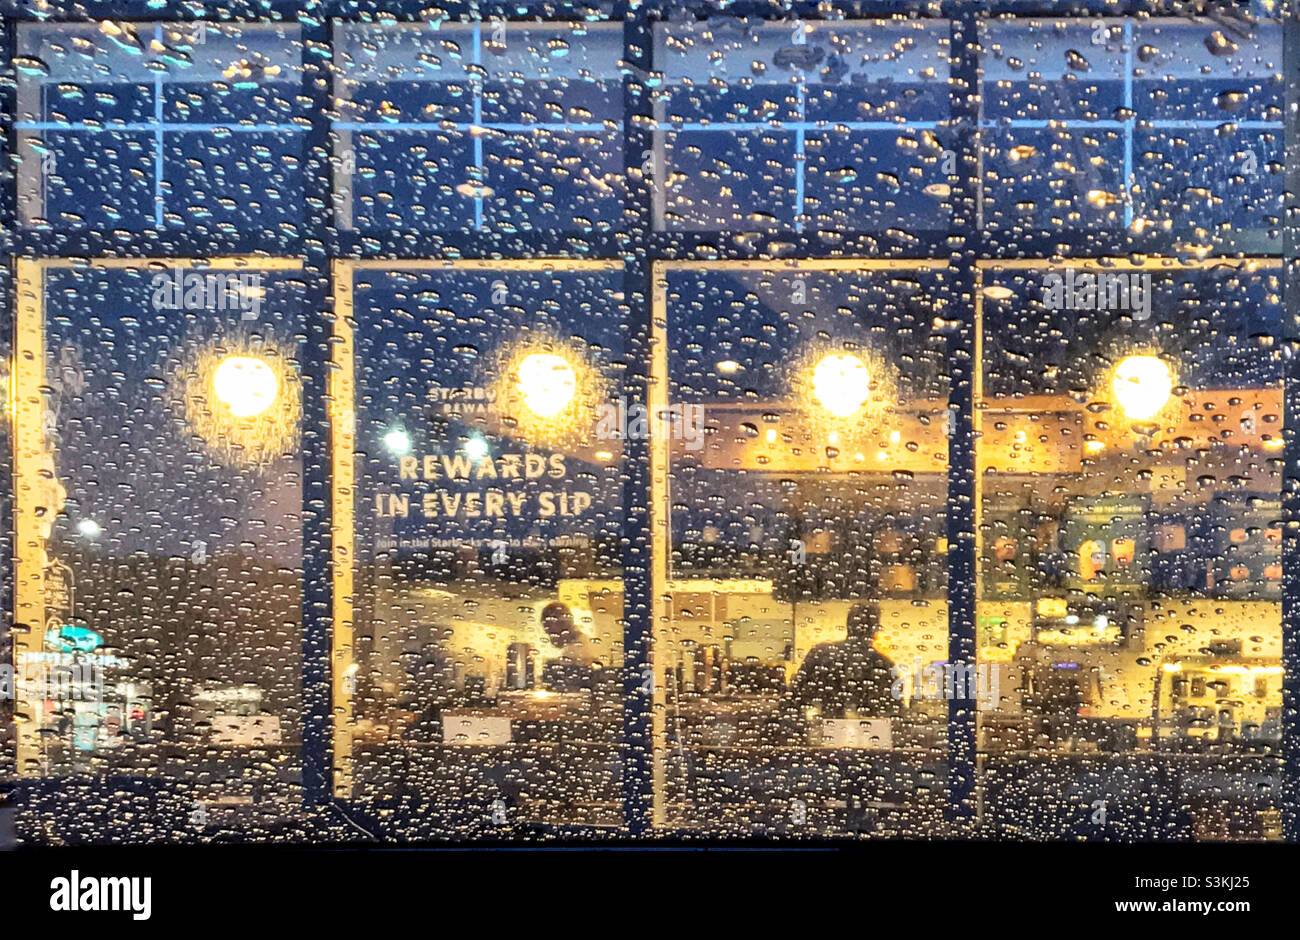 Regarder à travers un pare-brise couvert de gouttes de pluie dans la lueur chaude d'un café.Calgary, Alberta, Canada. Banque D'Images